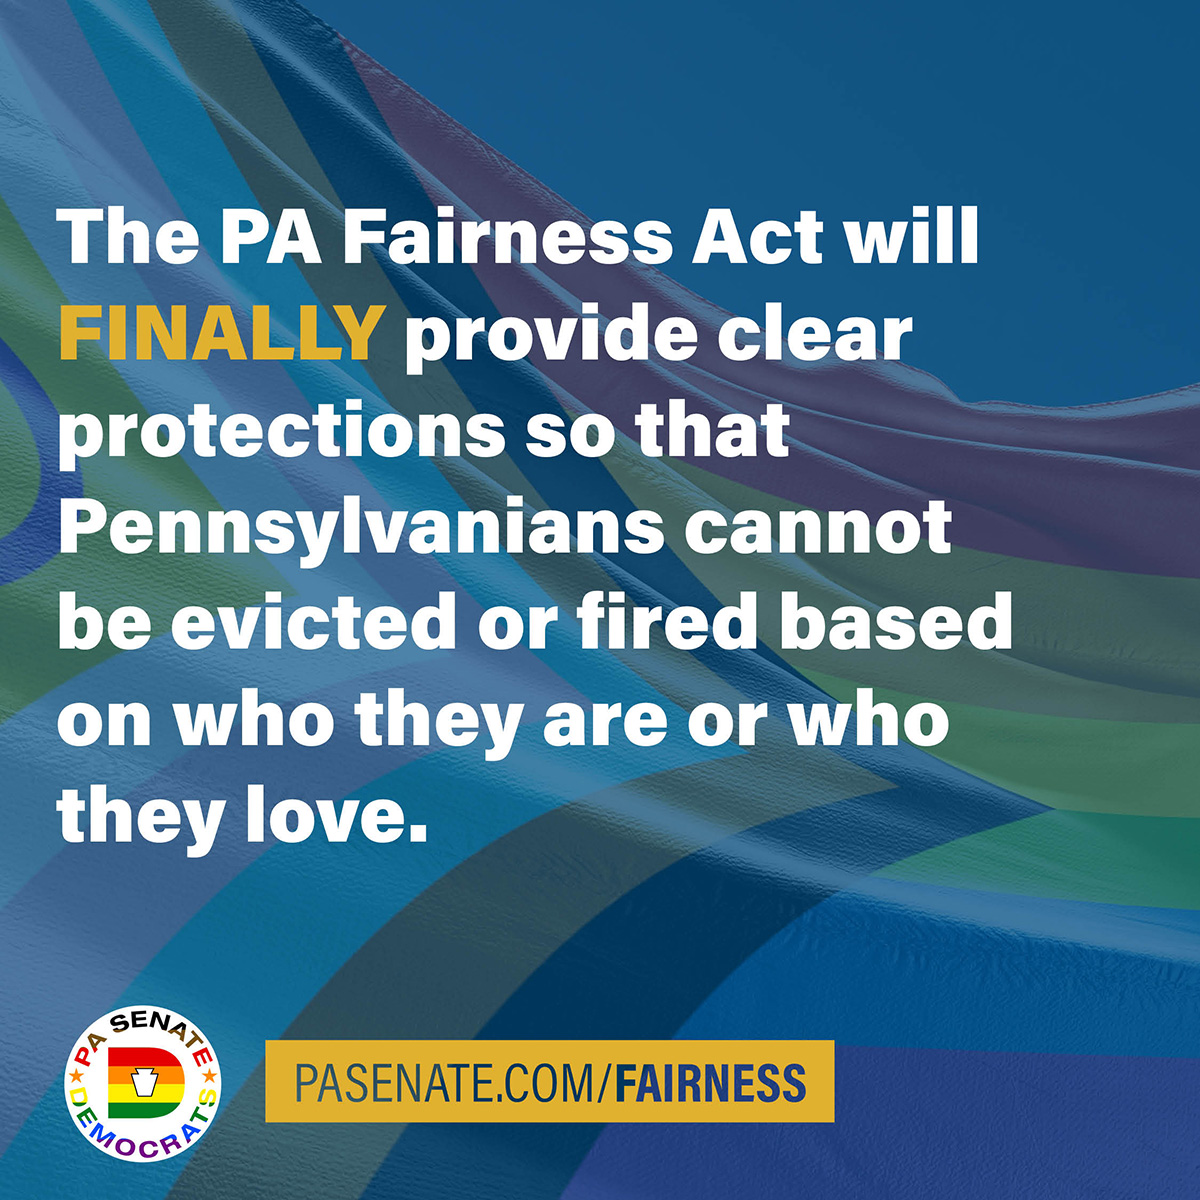 La Ley de Equidad de Pensilvania (PA Fairness Act) proporcionará FINALMENTE protecciones claras para que los ciudadanos de Pensilvania no puedan ser desahuciados o despedidos por ser quienes son o por amar a quien aman.